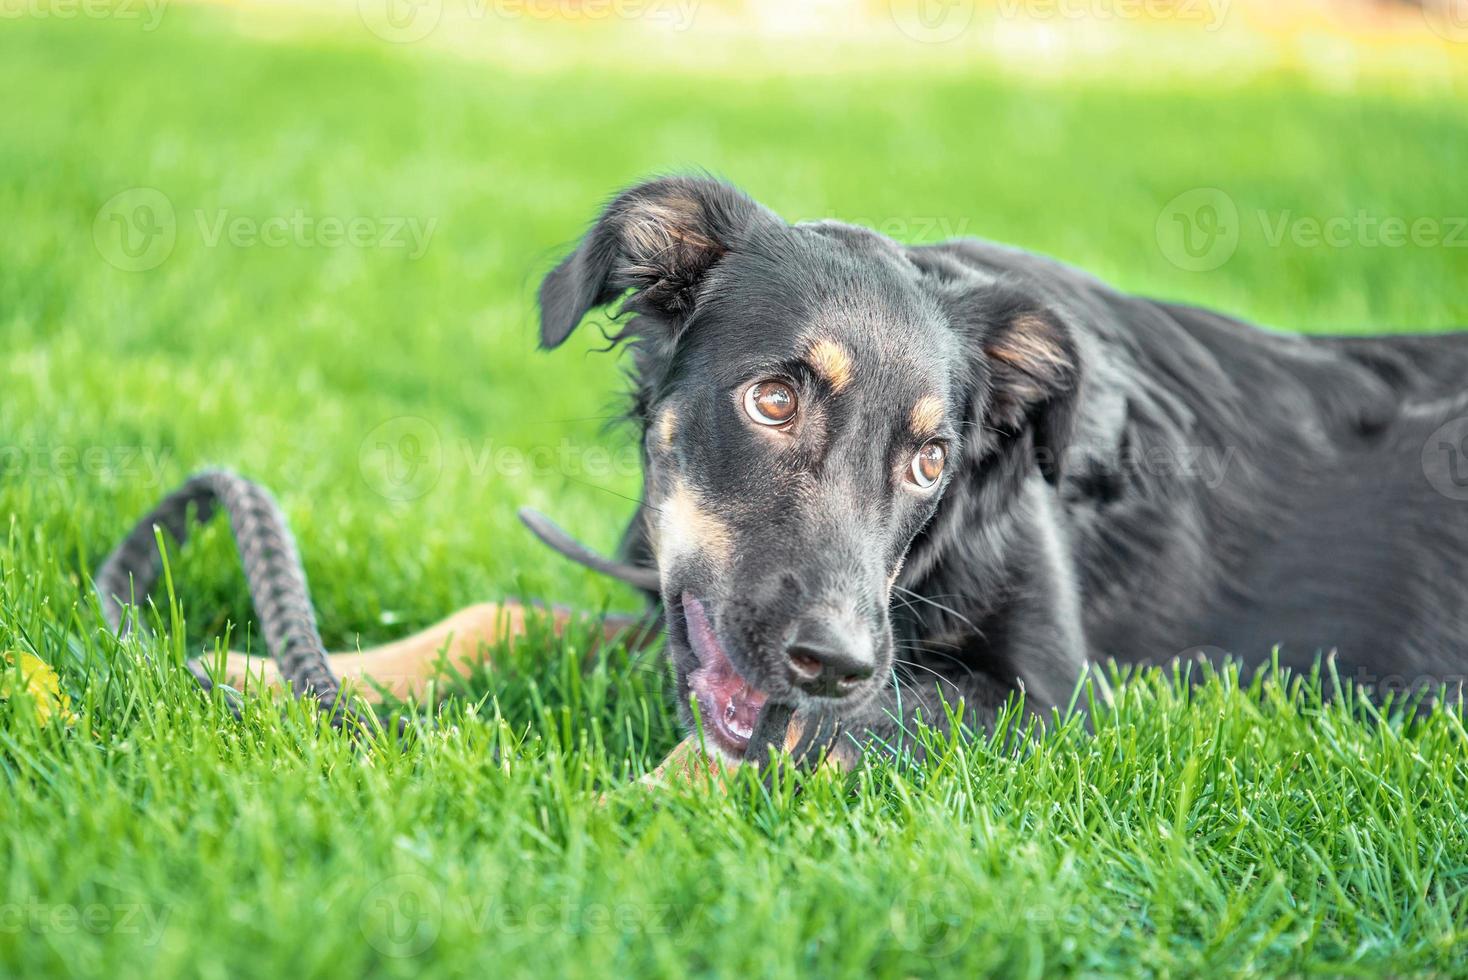 cucciolo bastardo rosicchia un guinzaglio in pelle durante una passeggiata nel parco foto